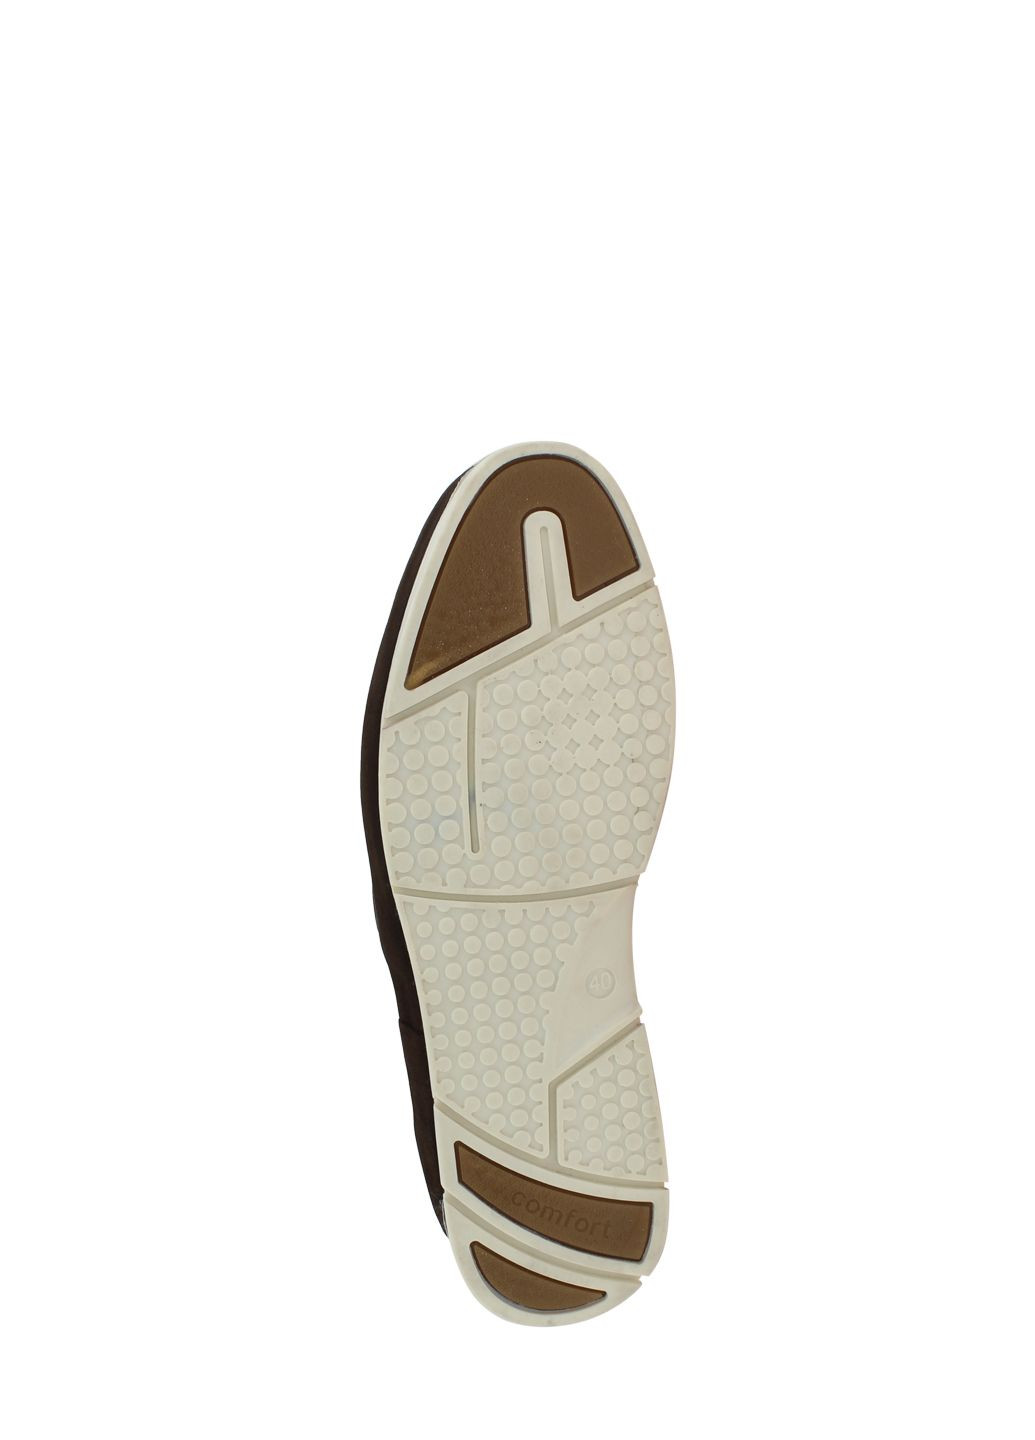 Коричневые туфли g1016.04 коричневый Goover